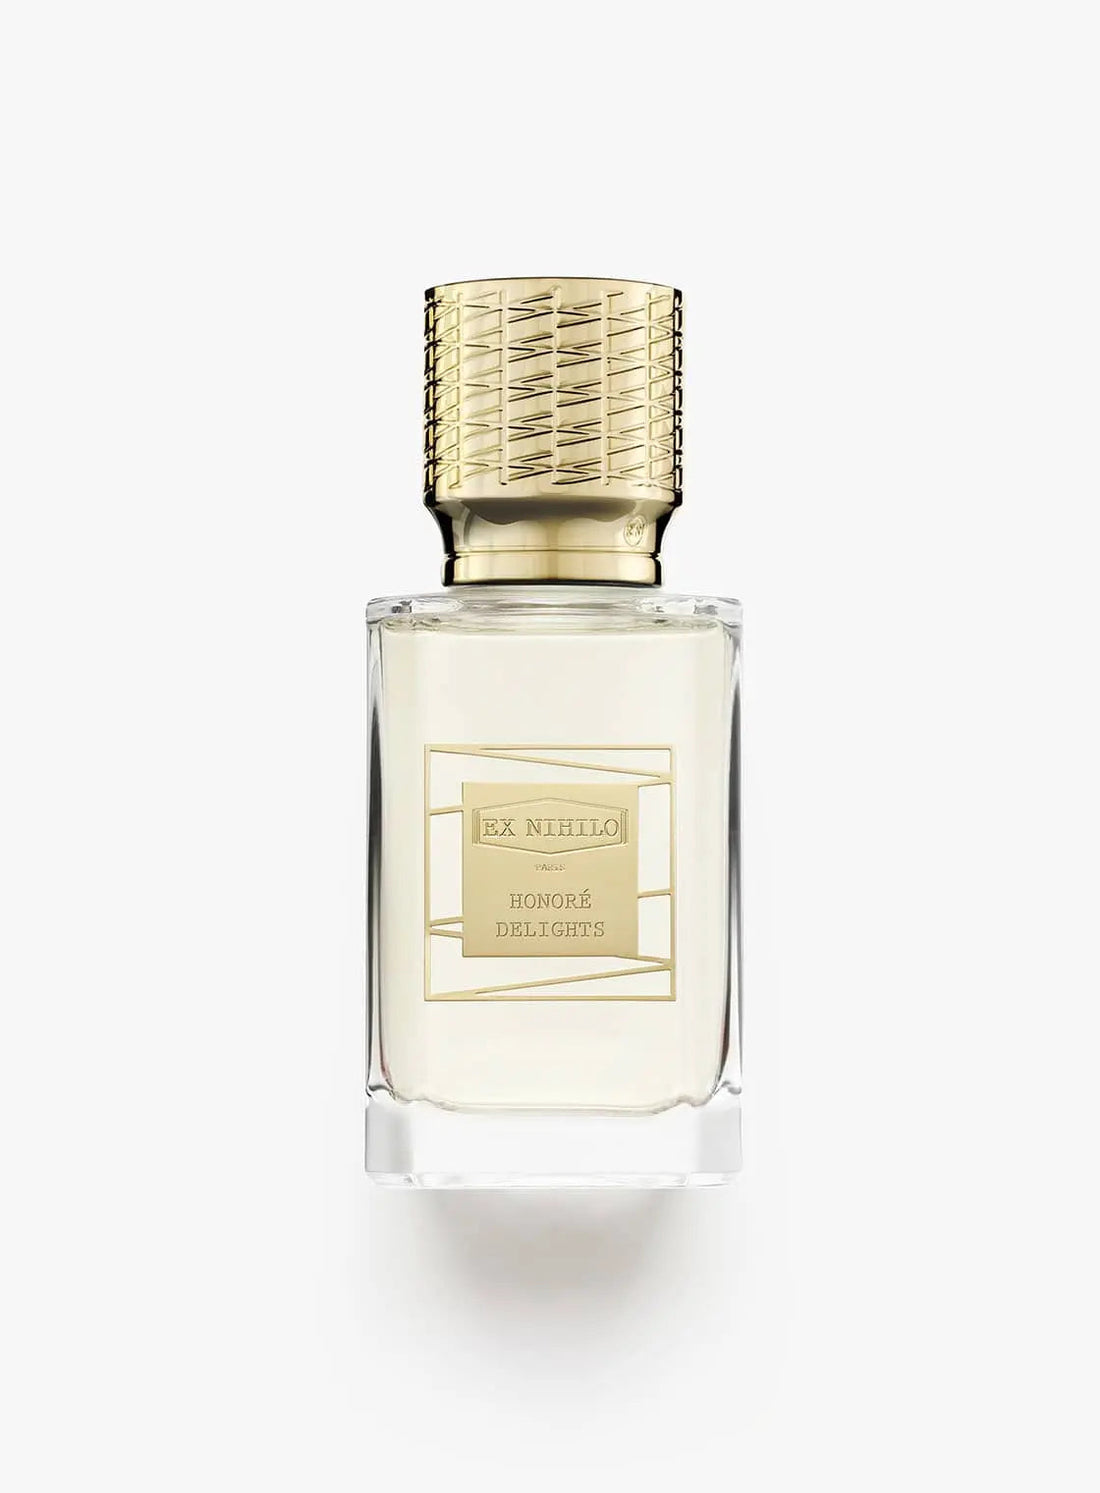 Ex nihilo Honorè Delights Eau de Parfum - 100 ml